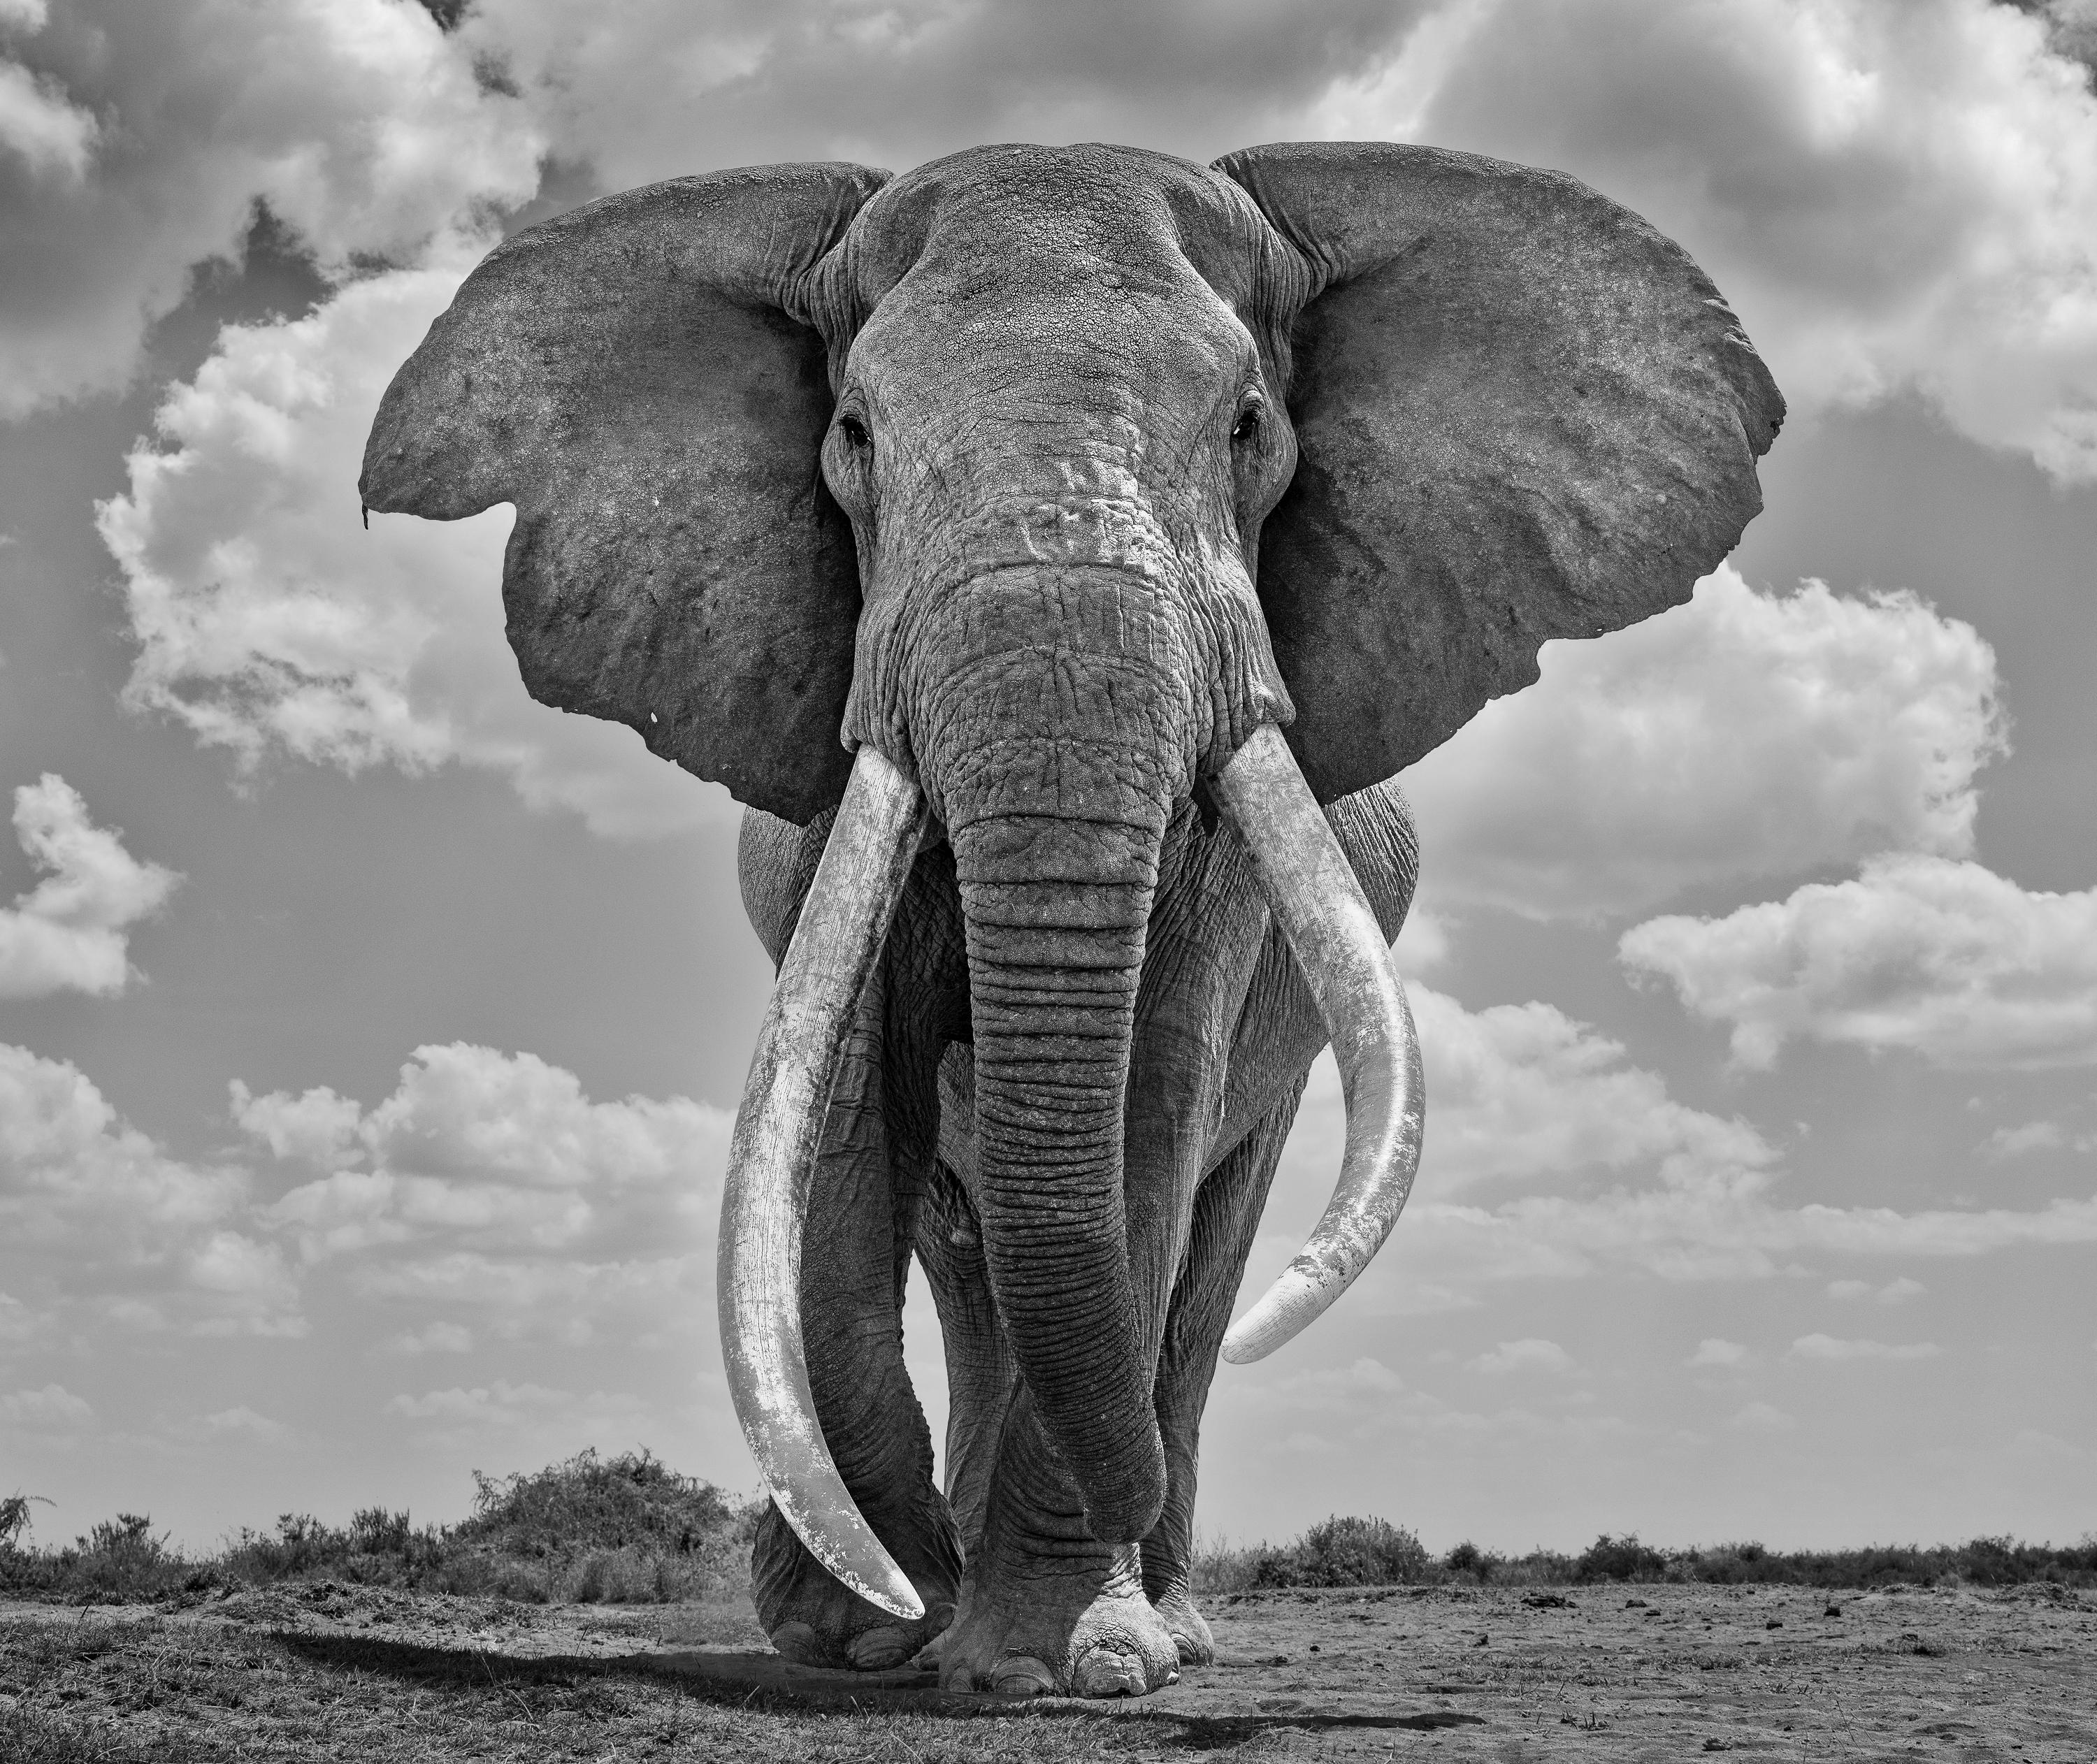 James Lewin – Mammoth des 21. Jahrhunderts, Fotografie 2021, Nachdruck